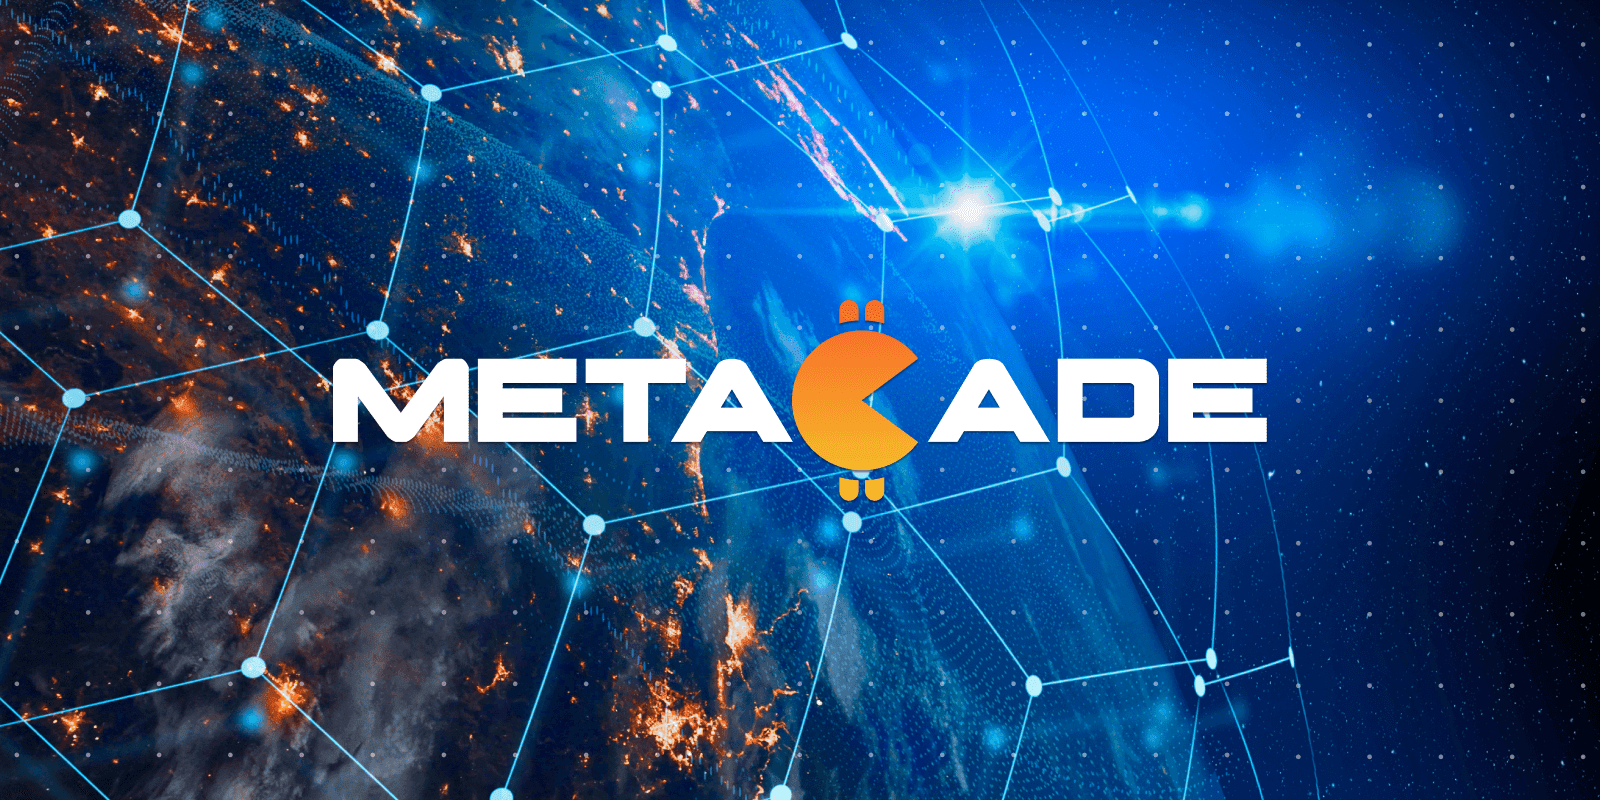 metacade